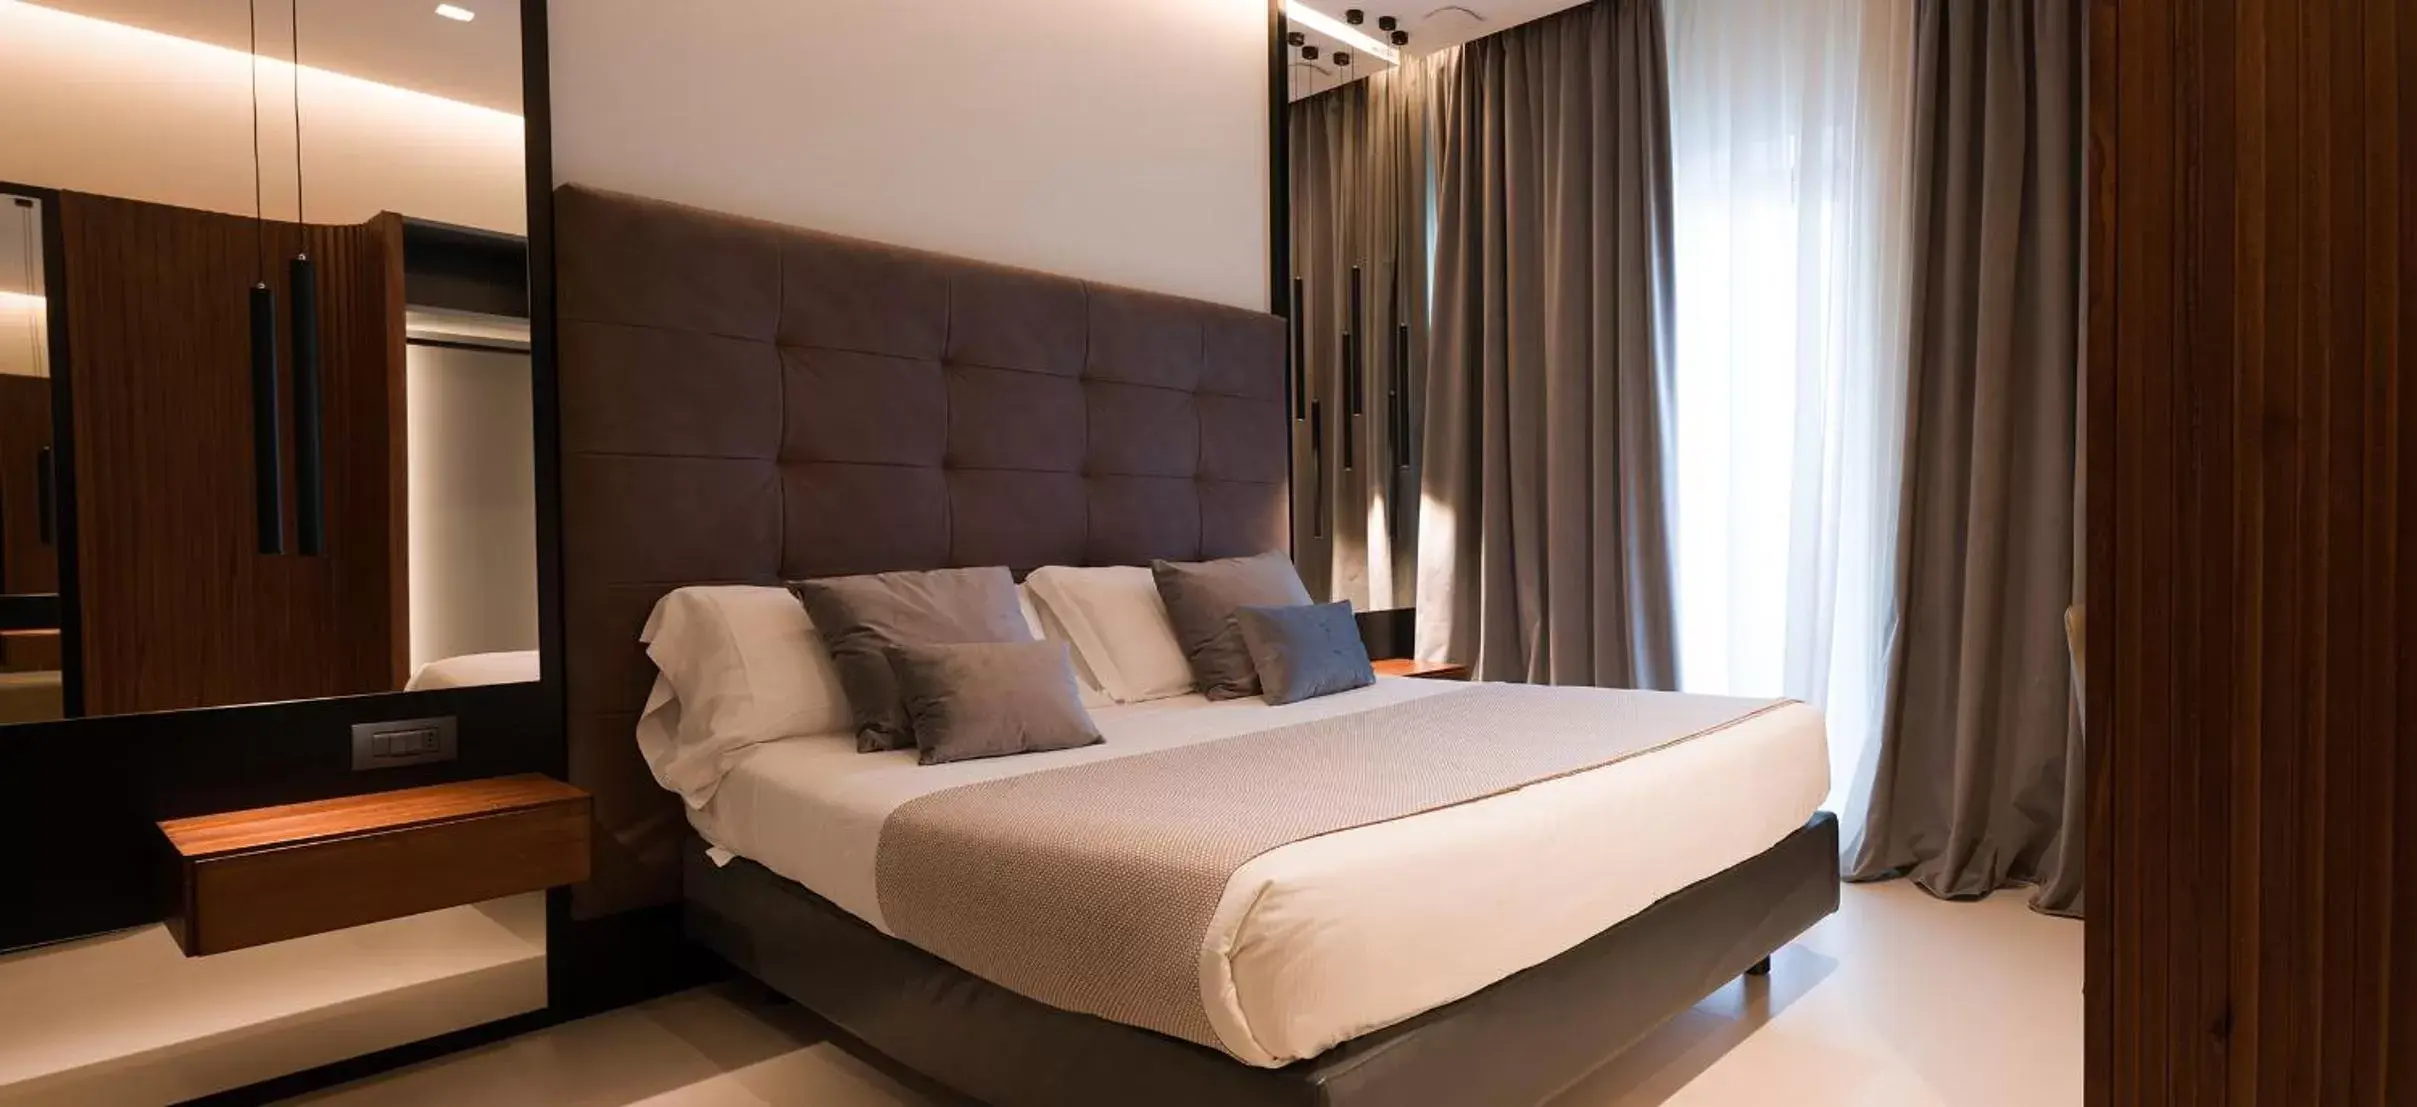 Bed in Best Western Hotel Ferrari